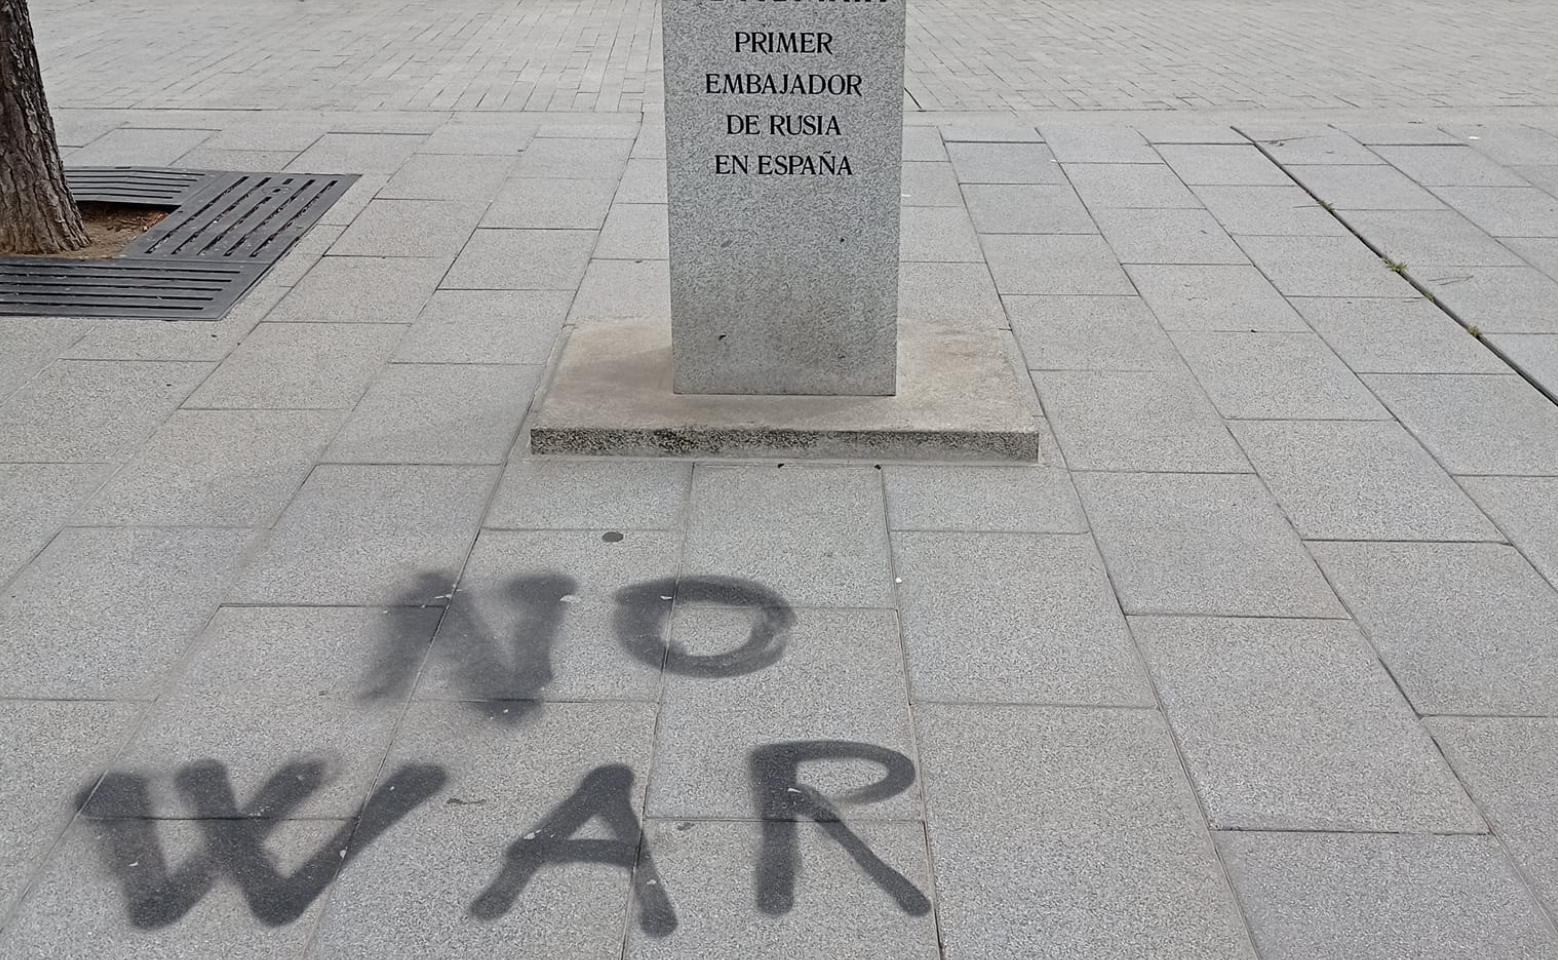 Vandalismo en el busto del primer Embajador ruso en España, Piotr Potiomkin, en El Puerto.